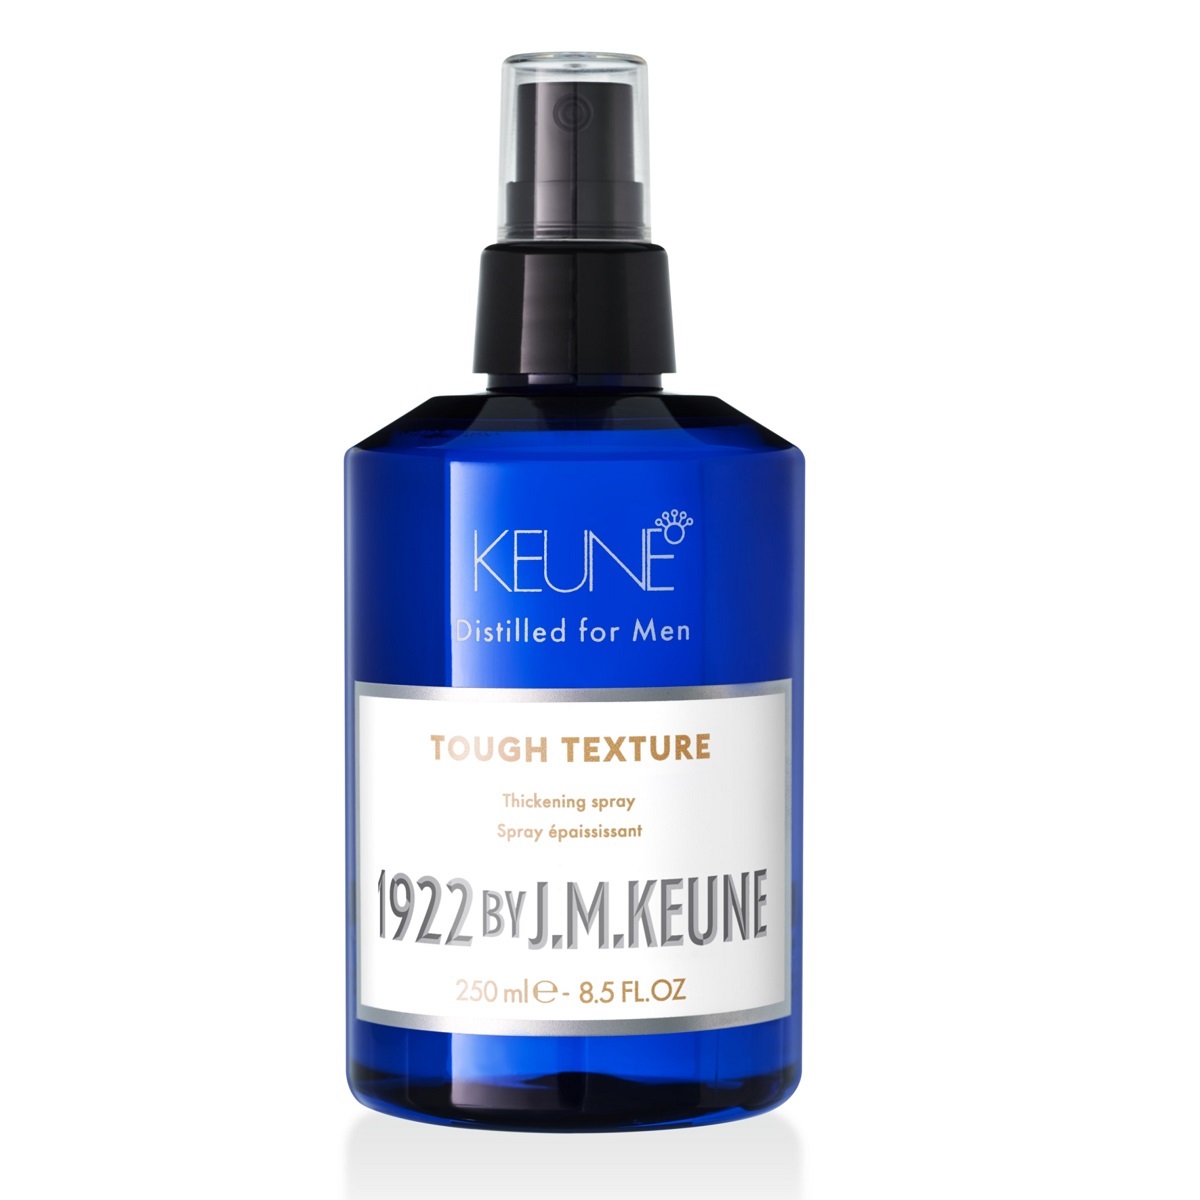 Keune Уплотняющий спрей Tough Texture, 250 мл (Keune, 1922 by J.M. Keune) цена и фото